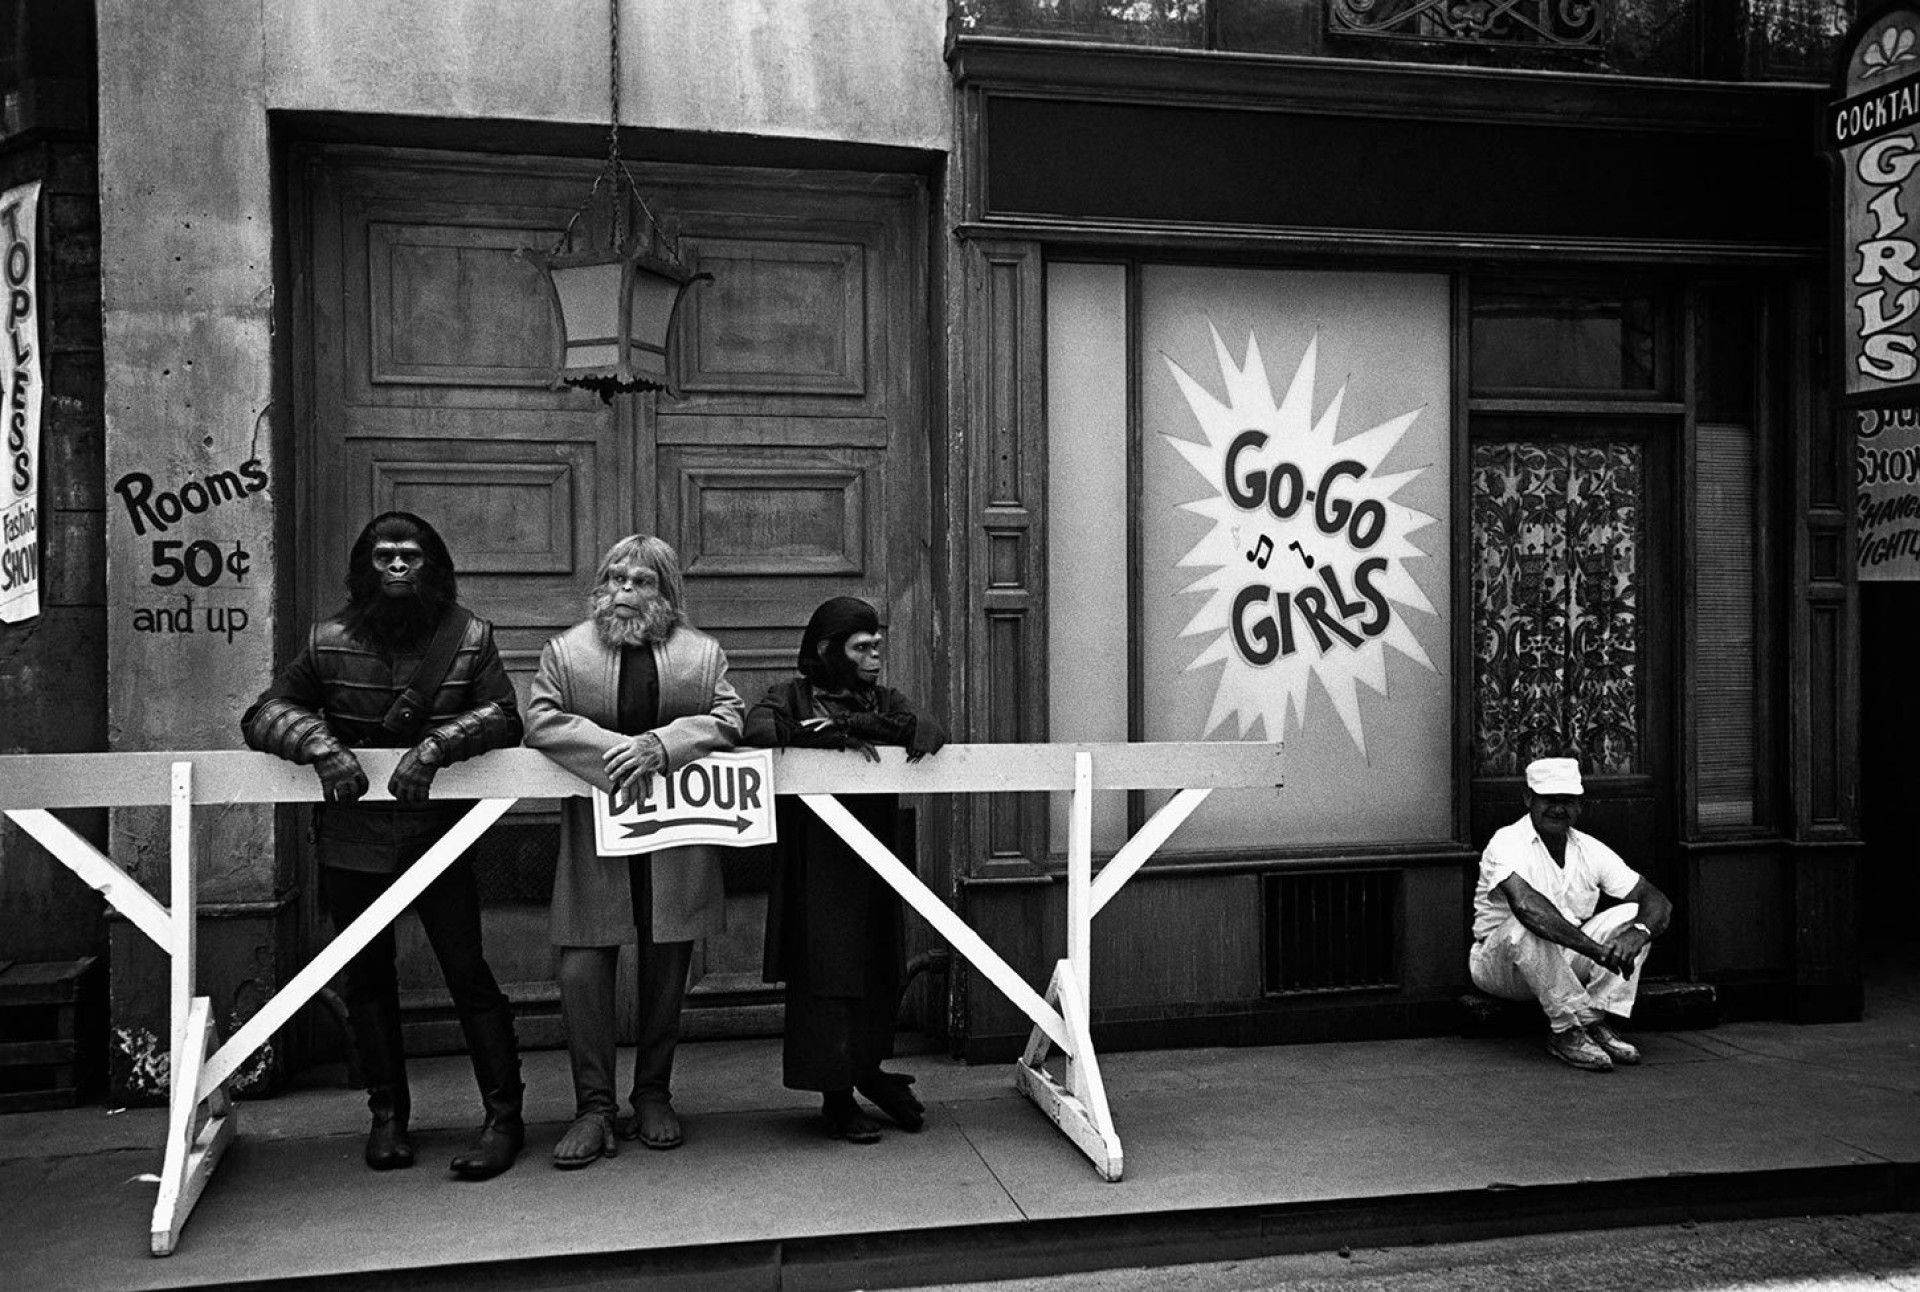 Киностудия 20th Century Fox во время съёмок фильма Планета обезьян, 1967. Фотограф Деннис Сток